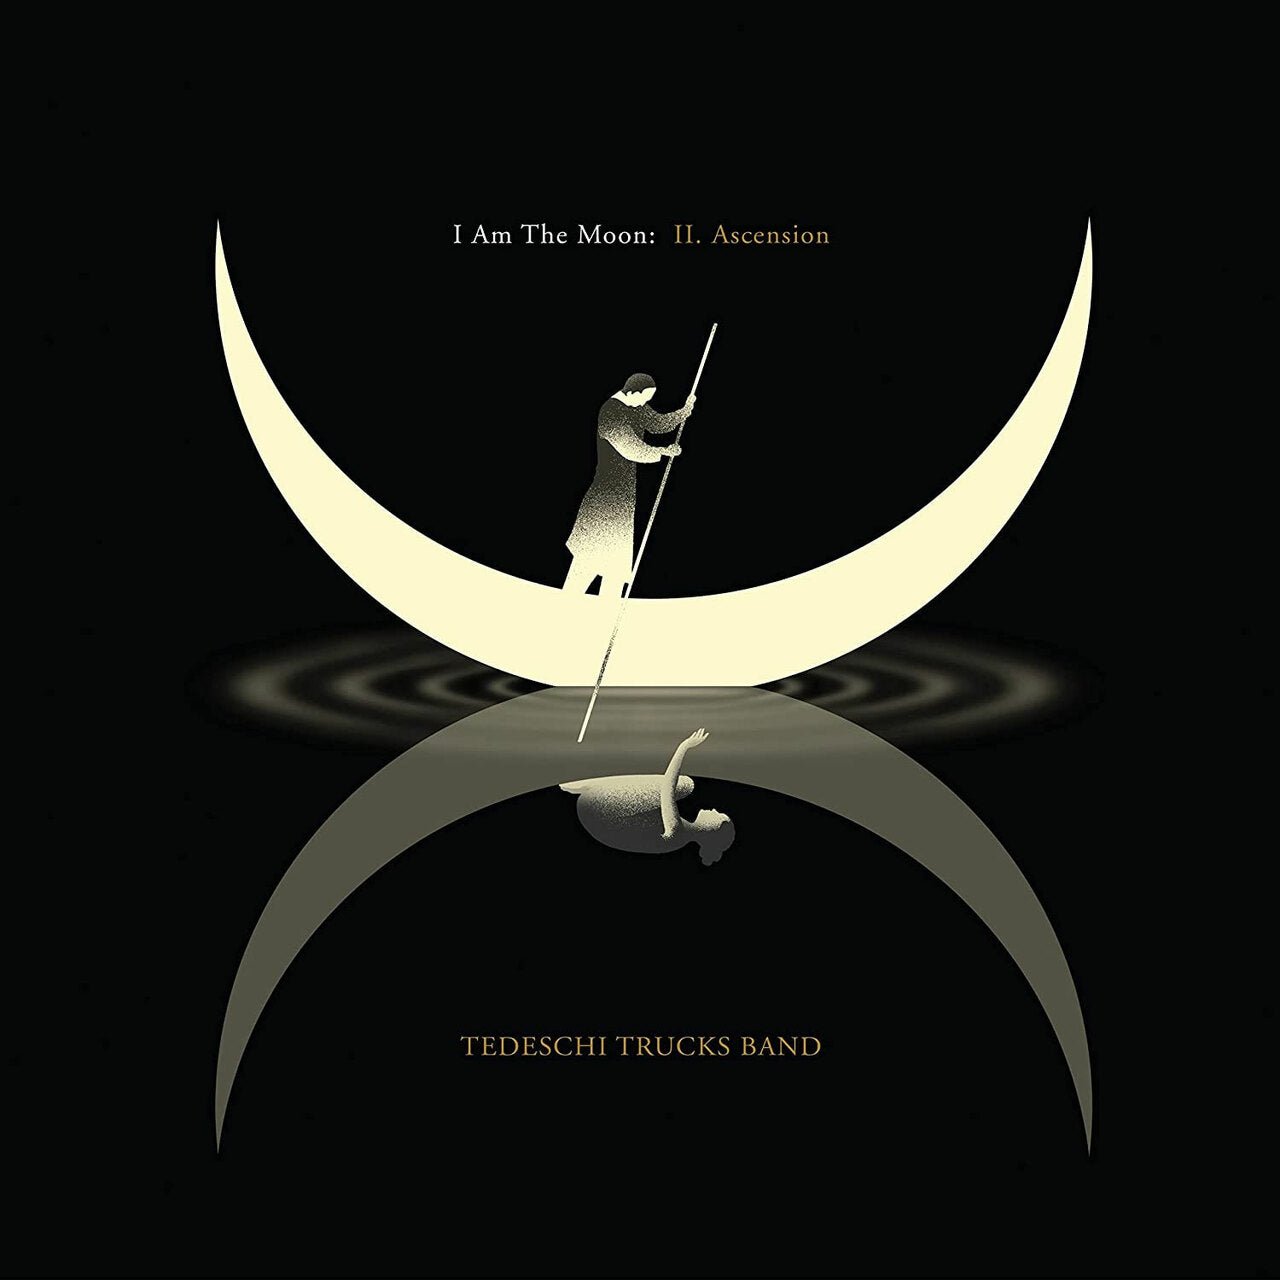 TEDESCHI TRUCKS BAND - I AM THE MOON: II. ASCENSION Vinyl LP